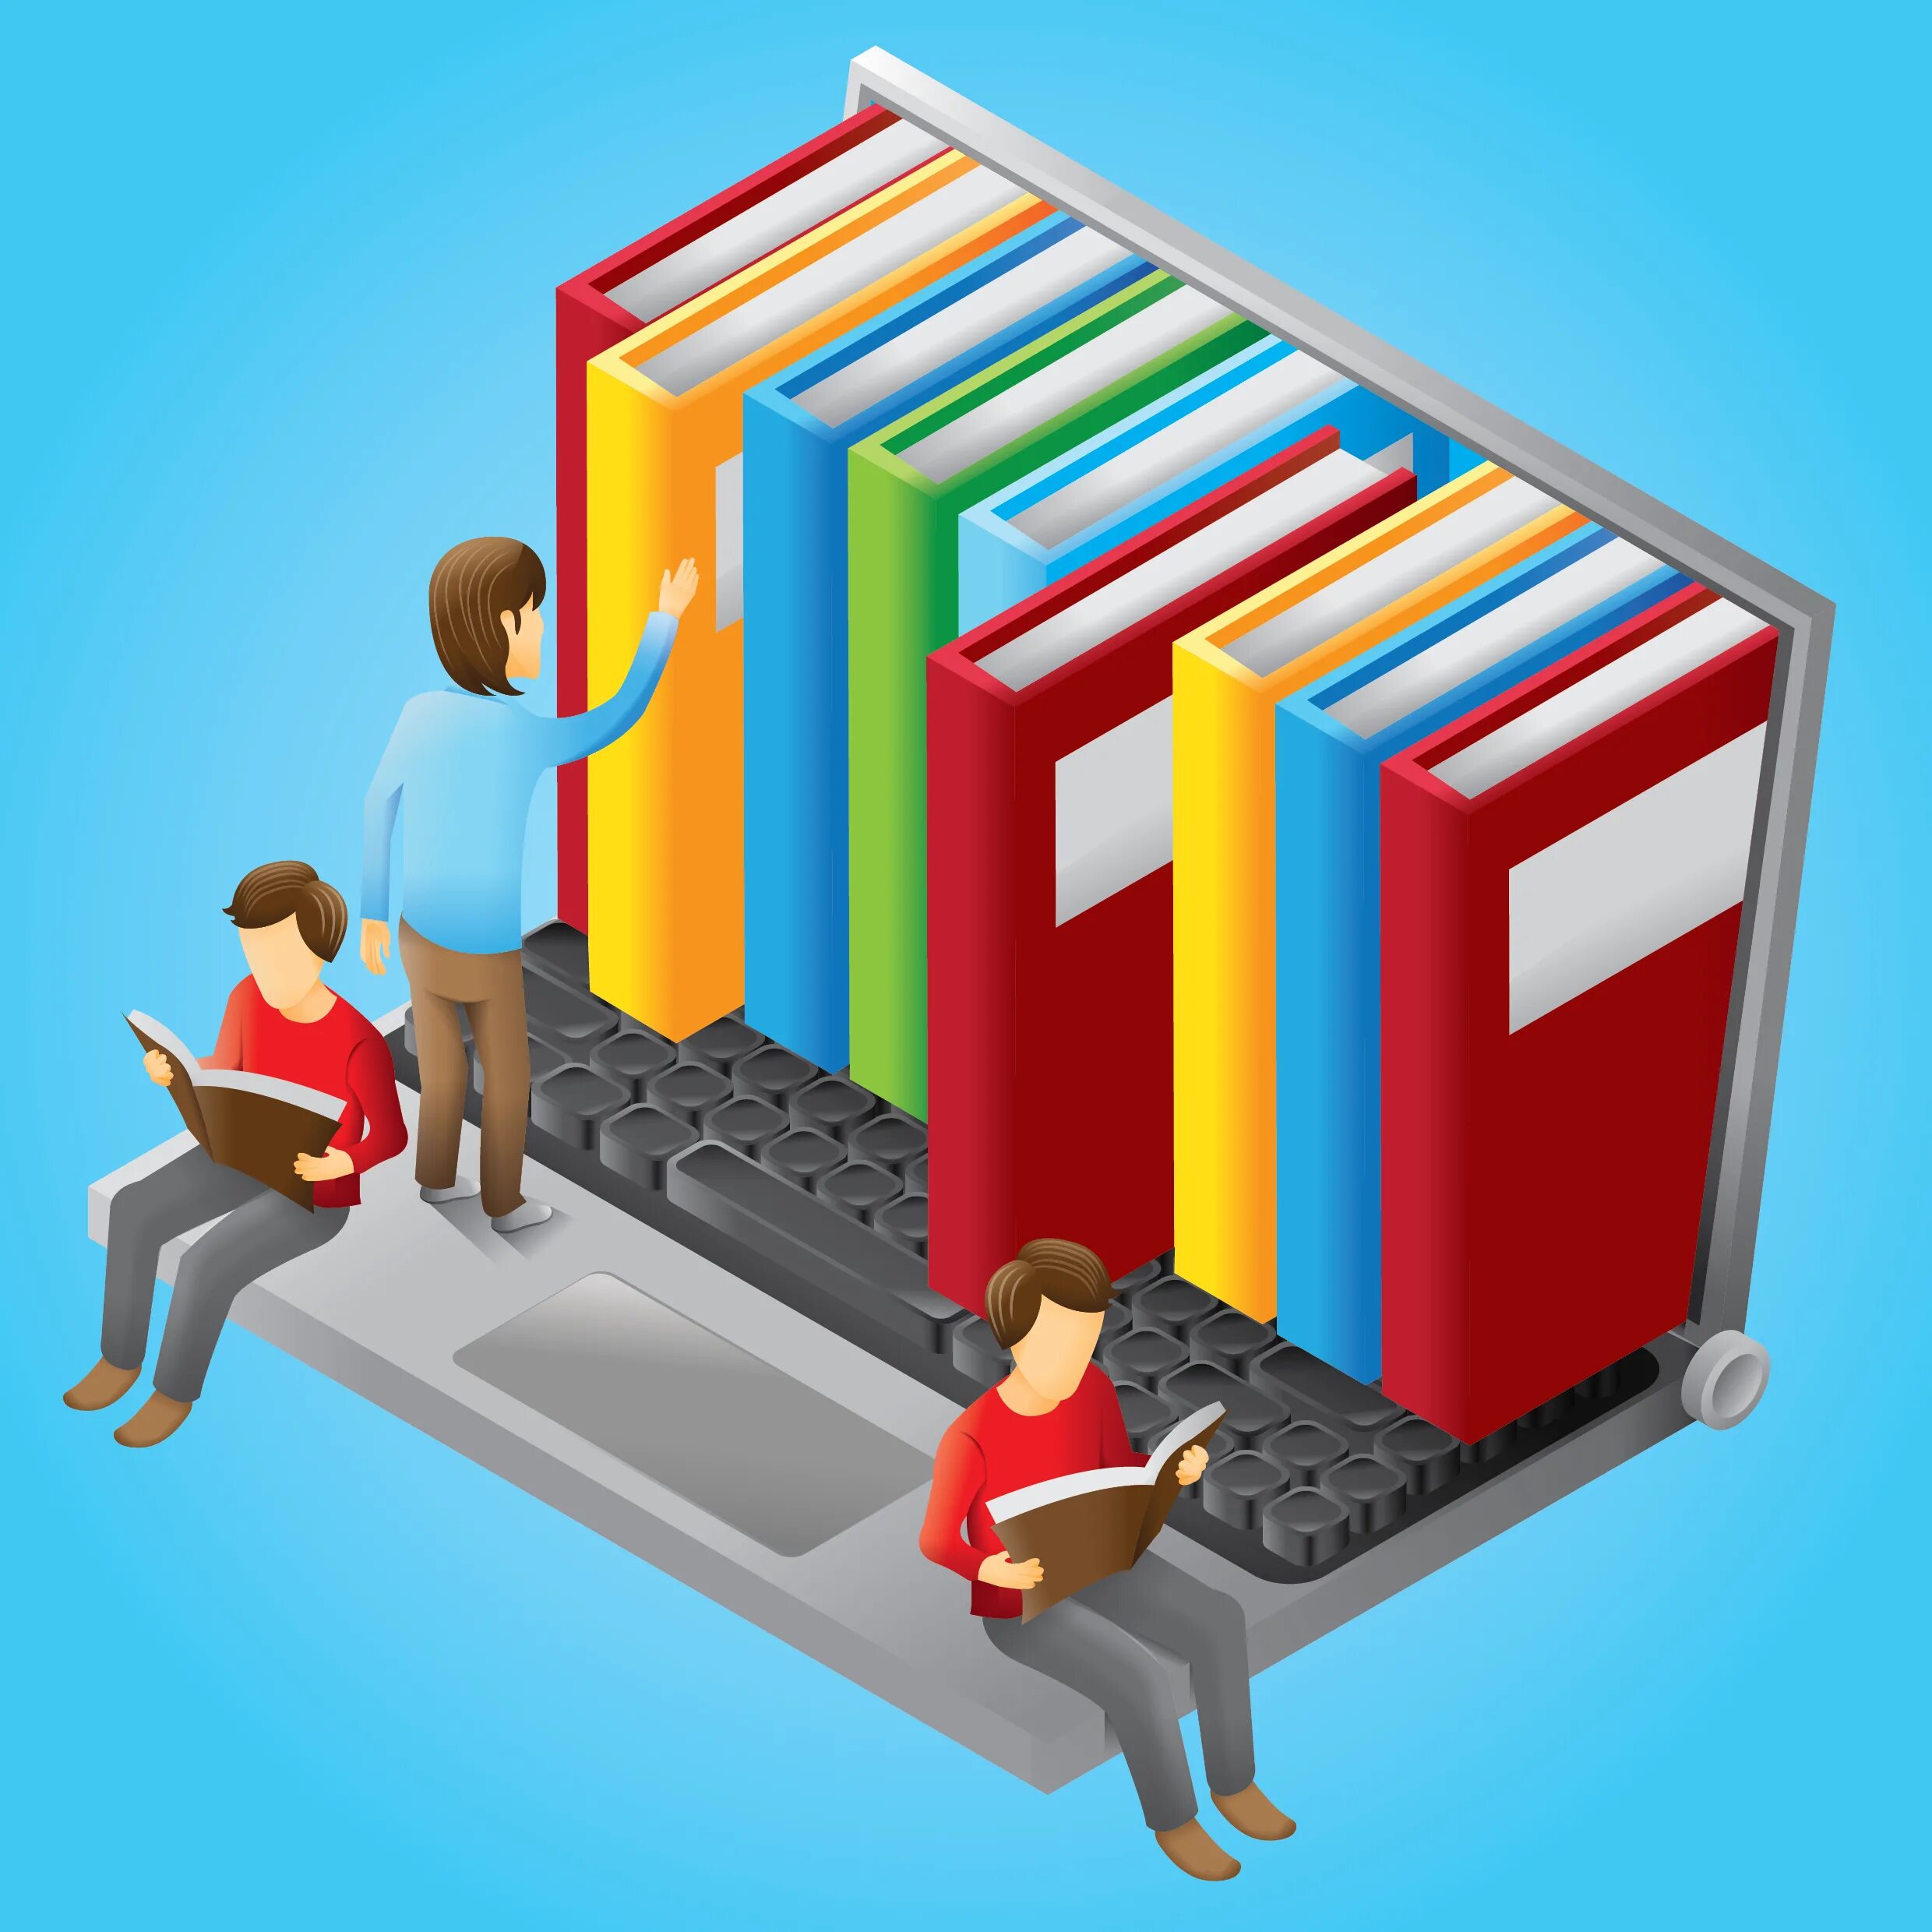 Resource library. Библиотека вектор. Современная библиотека вектор. Электронная библиотека вектор. Логотип библиотеки современный.